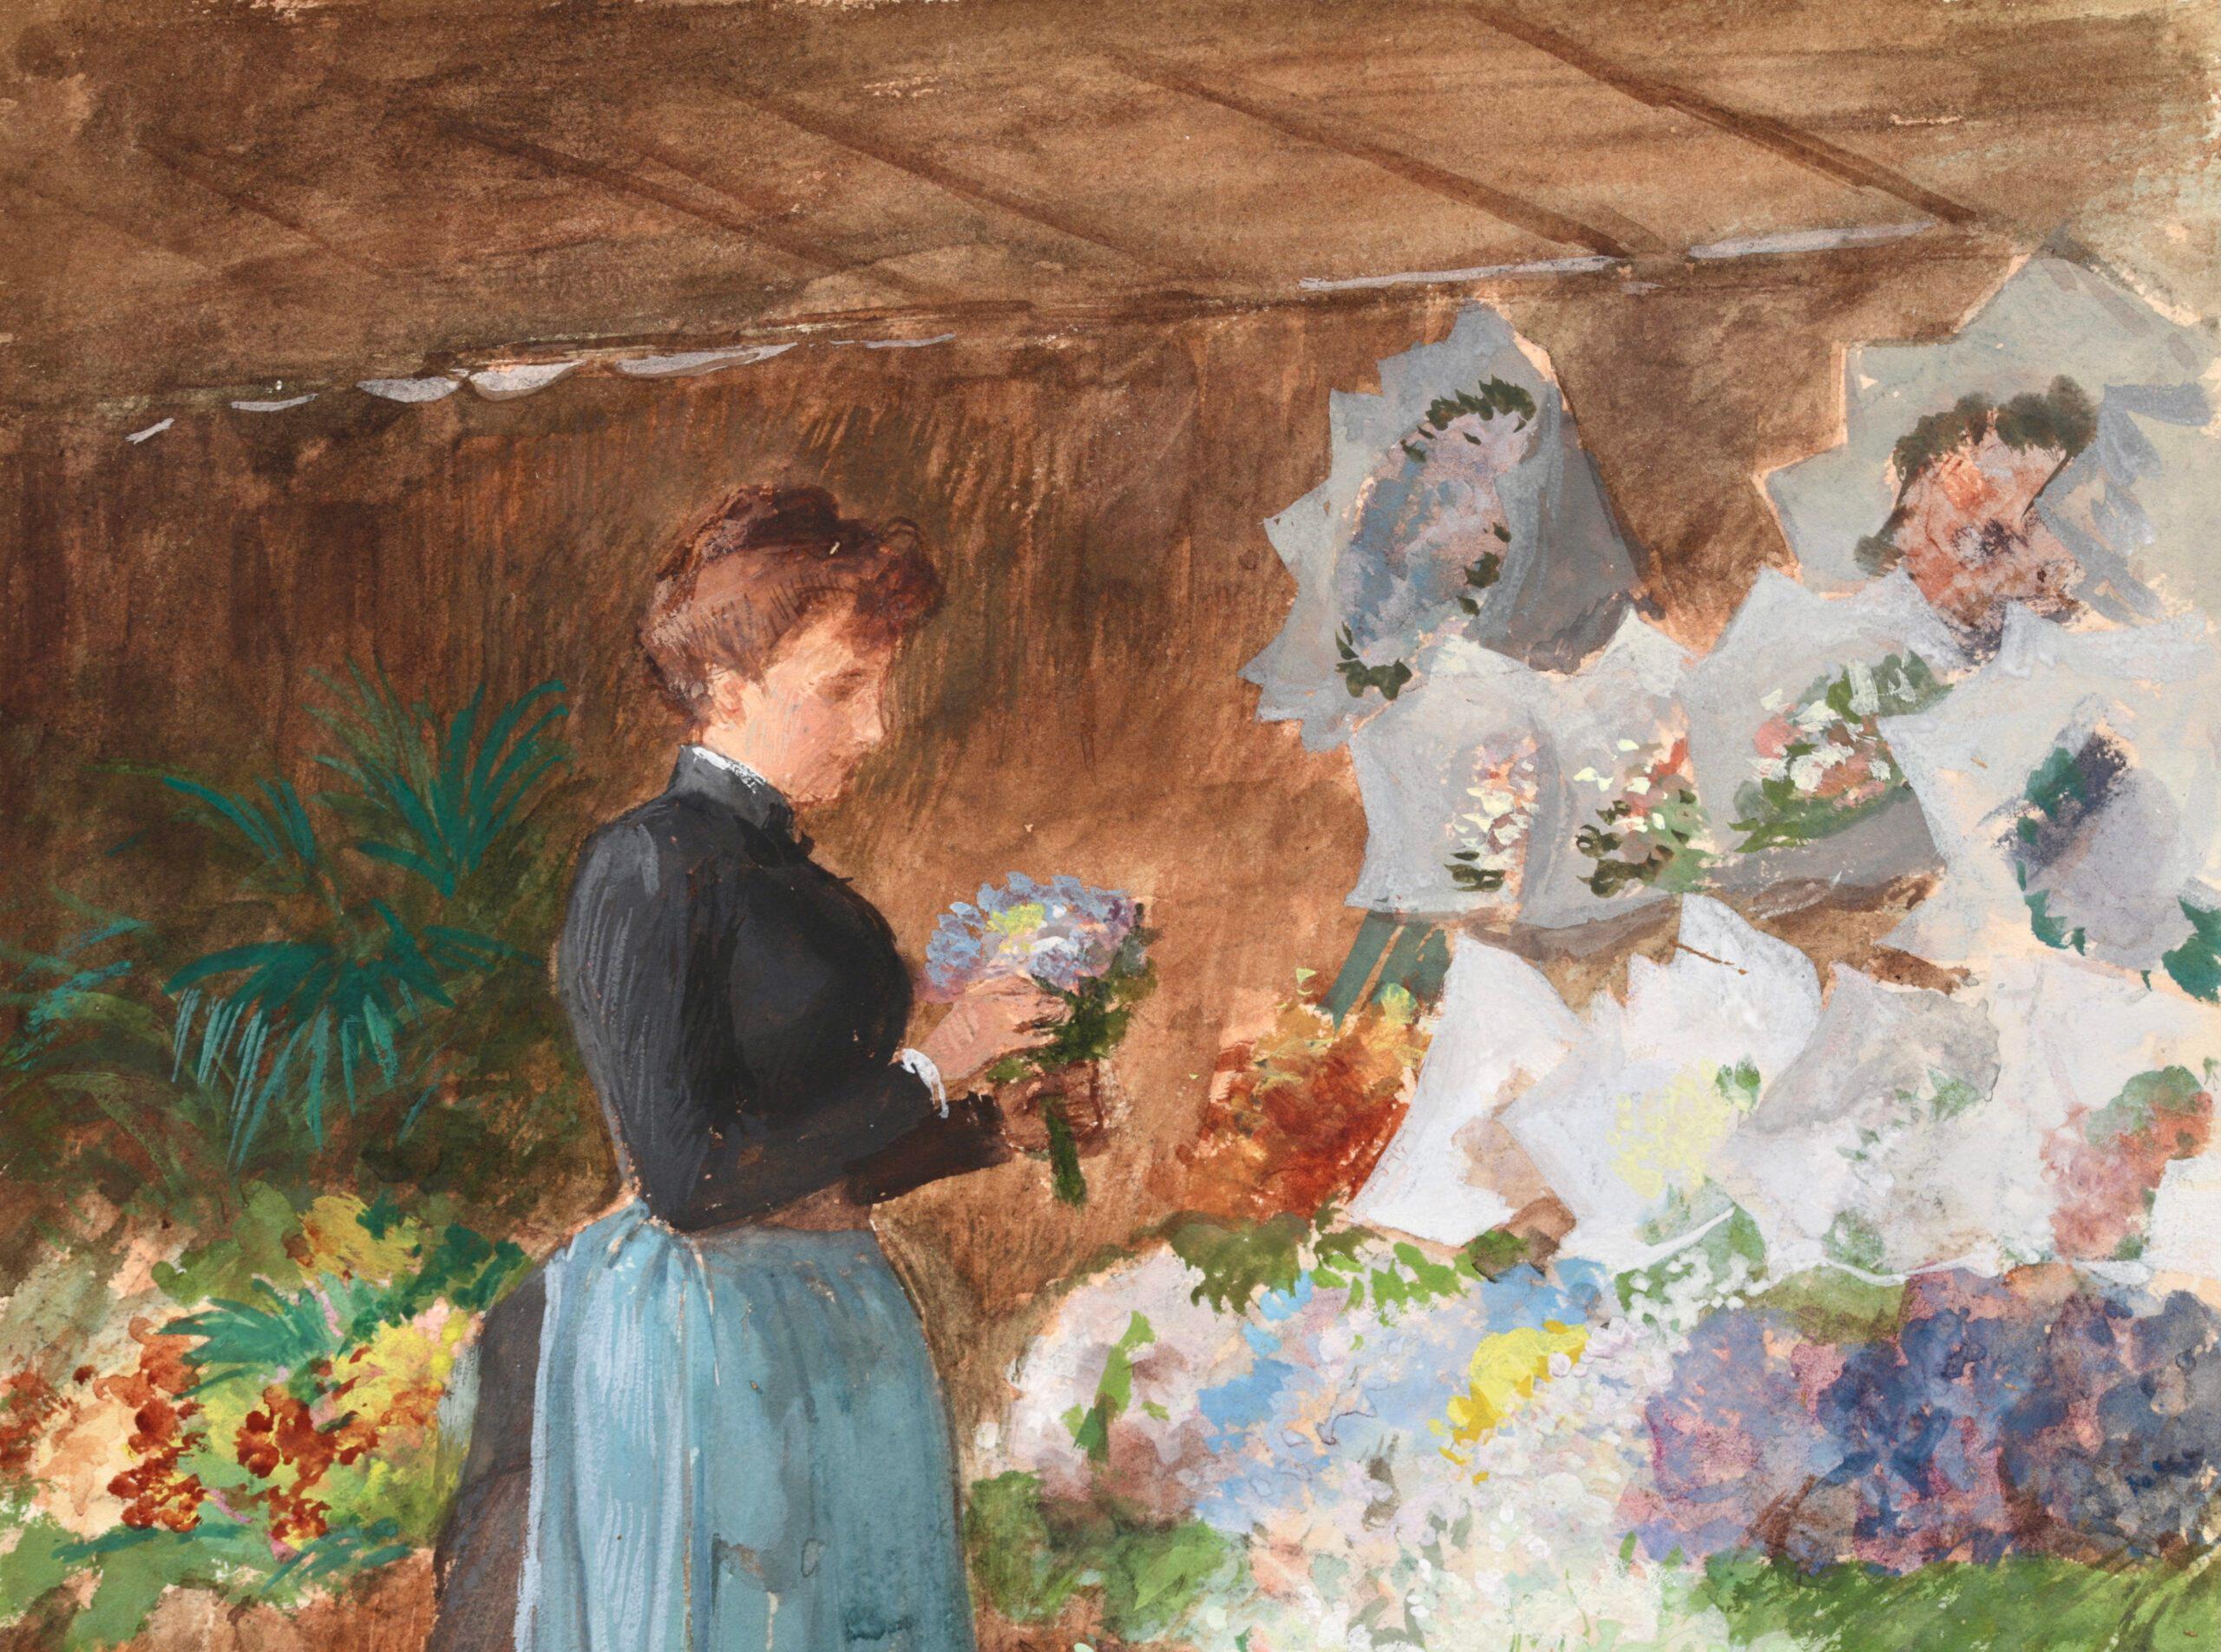 Le vendeur de fleurs - aquarelle figurative réaliste française de Victor Gilbert - Réalisme Art par Victor Gabriel Gilbert